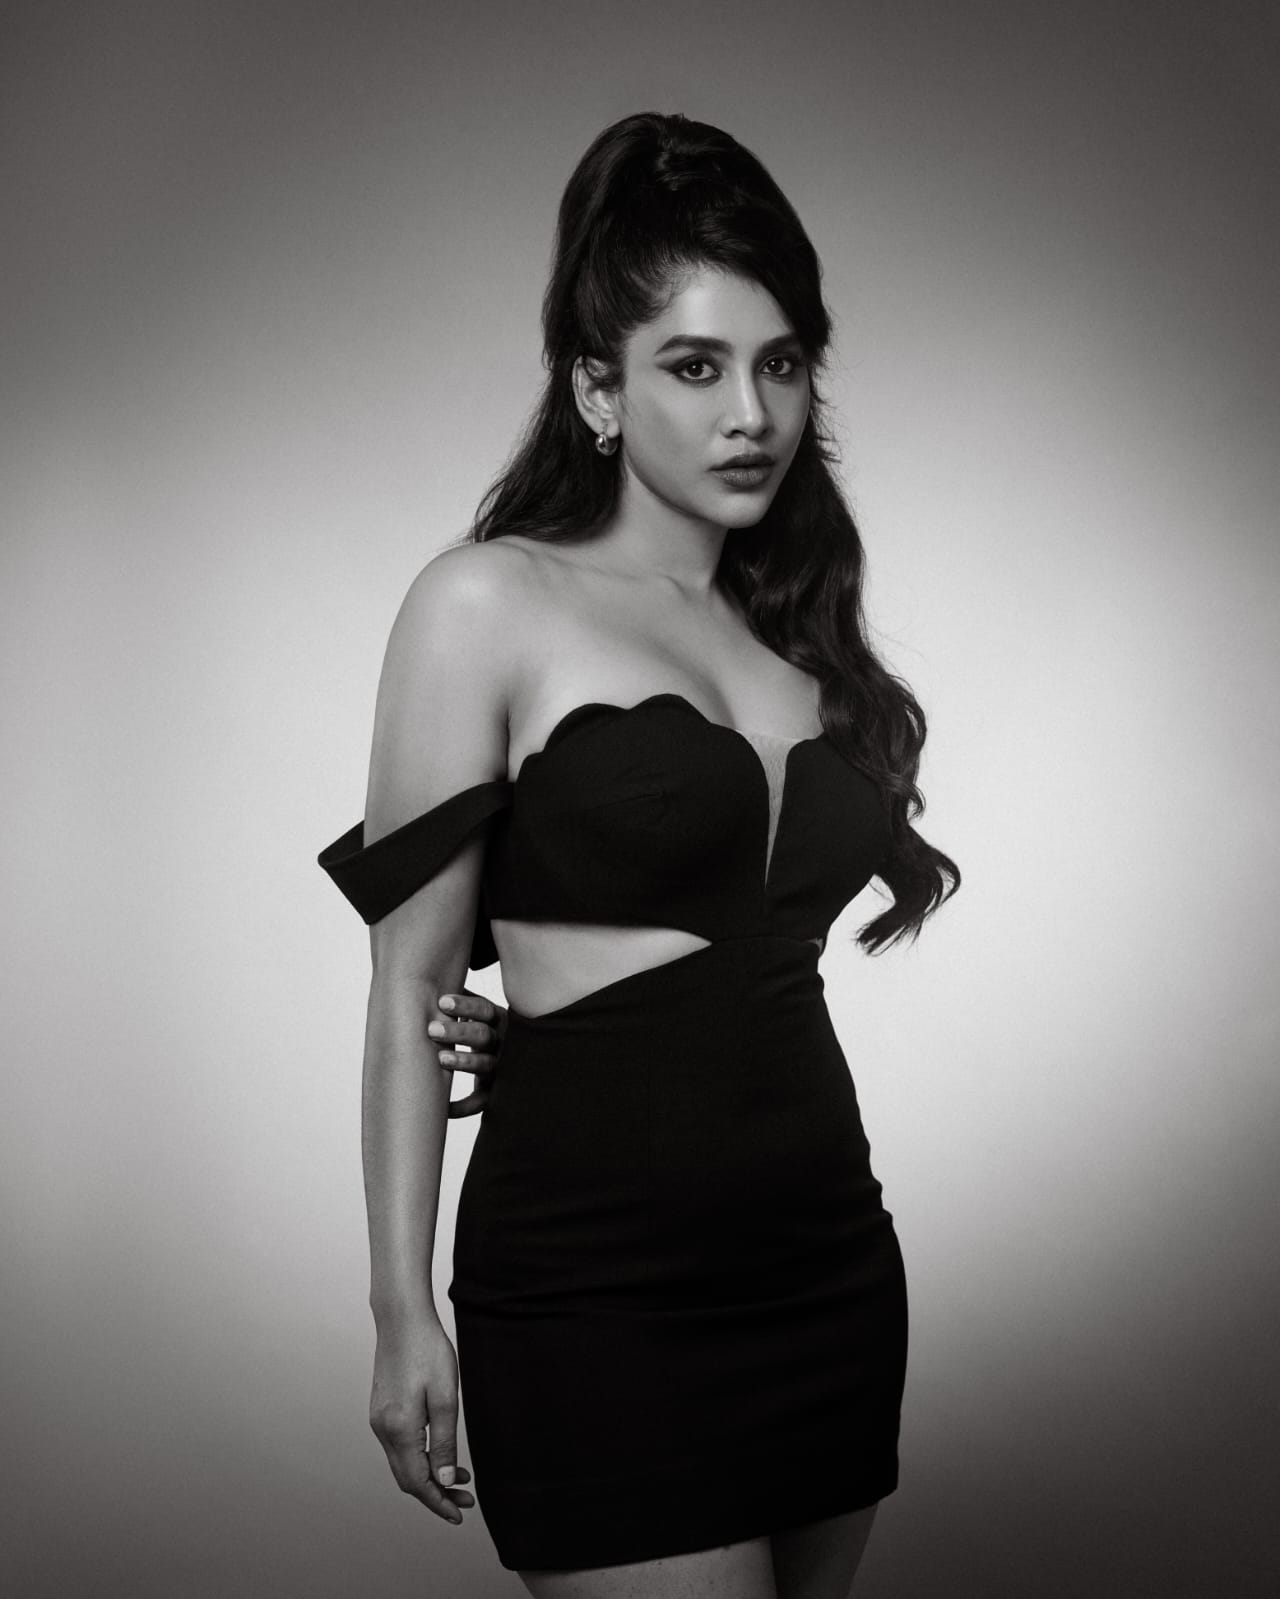 Pic Talk: Kannada Beauty Stuns In Black